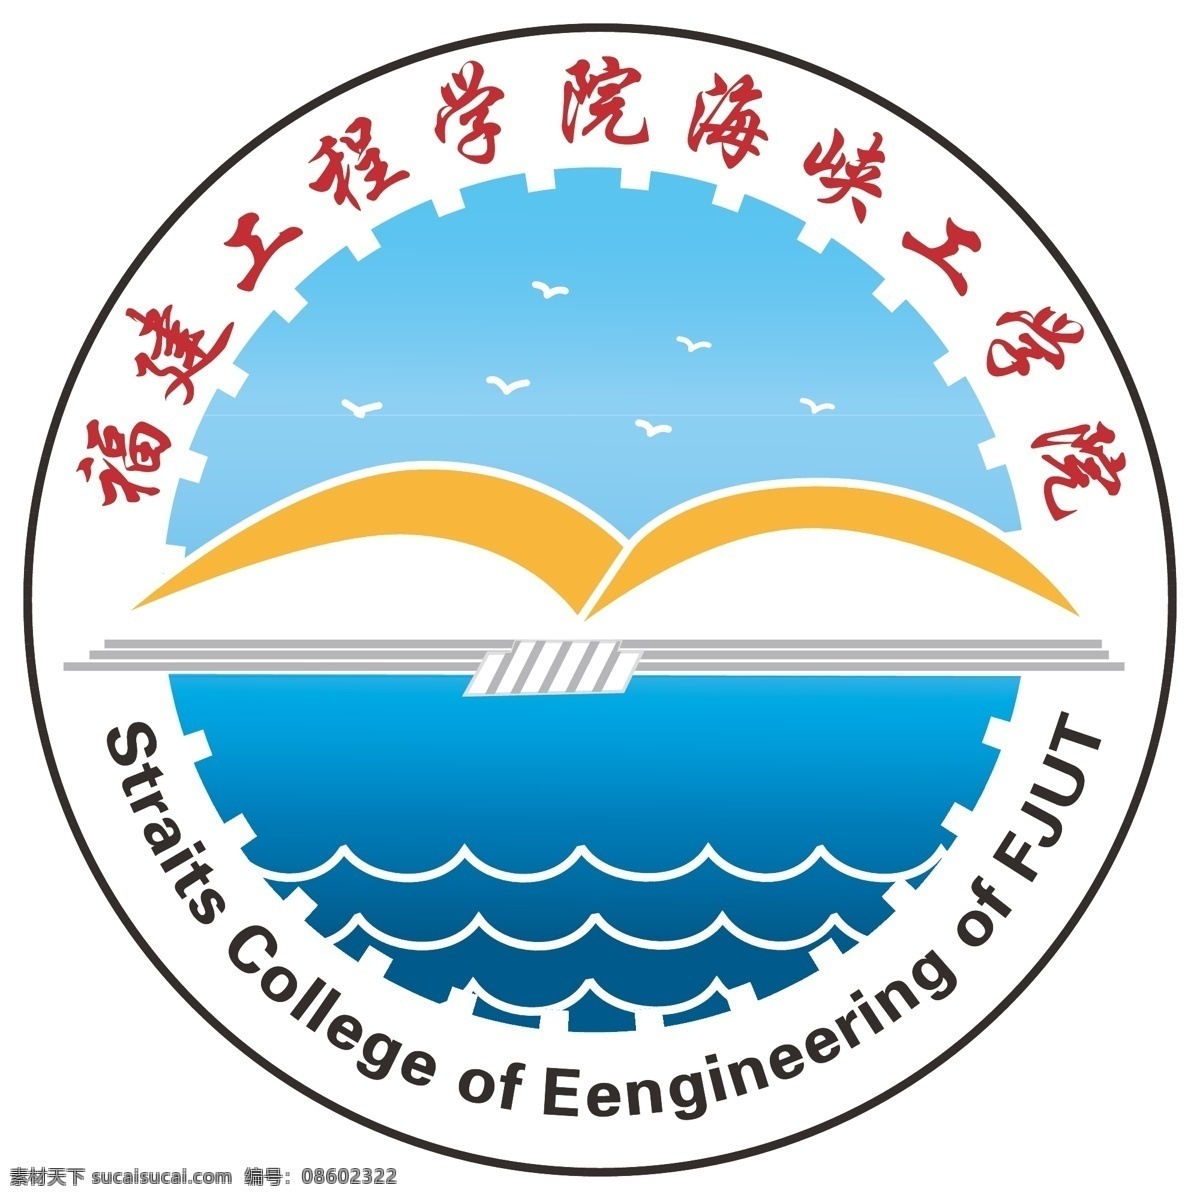 福建 工程学院 海峡 工程 福建工程学院 海峡工程学院 学校logo logo 学院 标志图标 其他图标